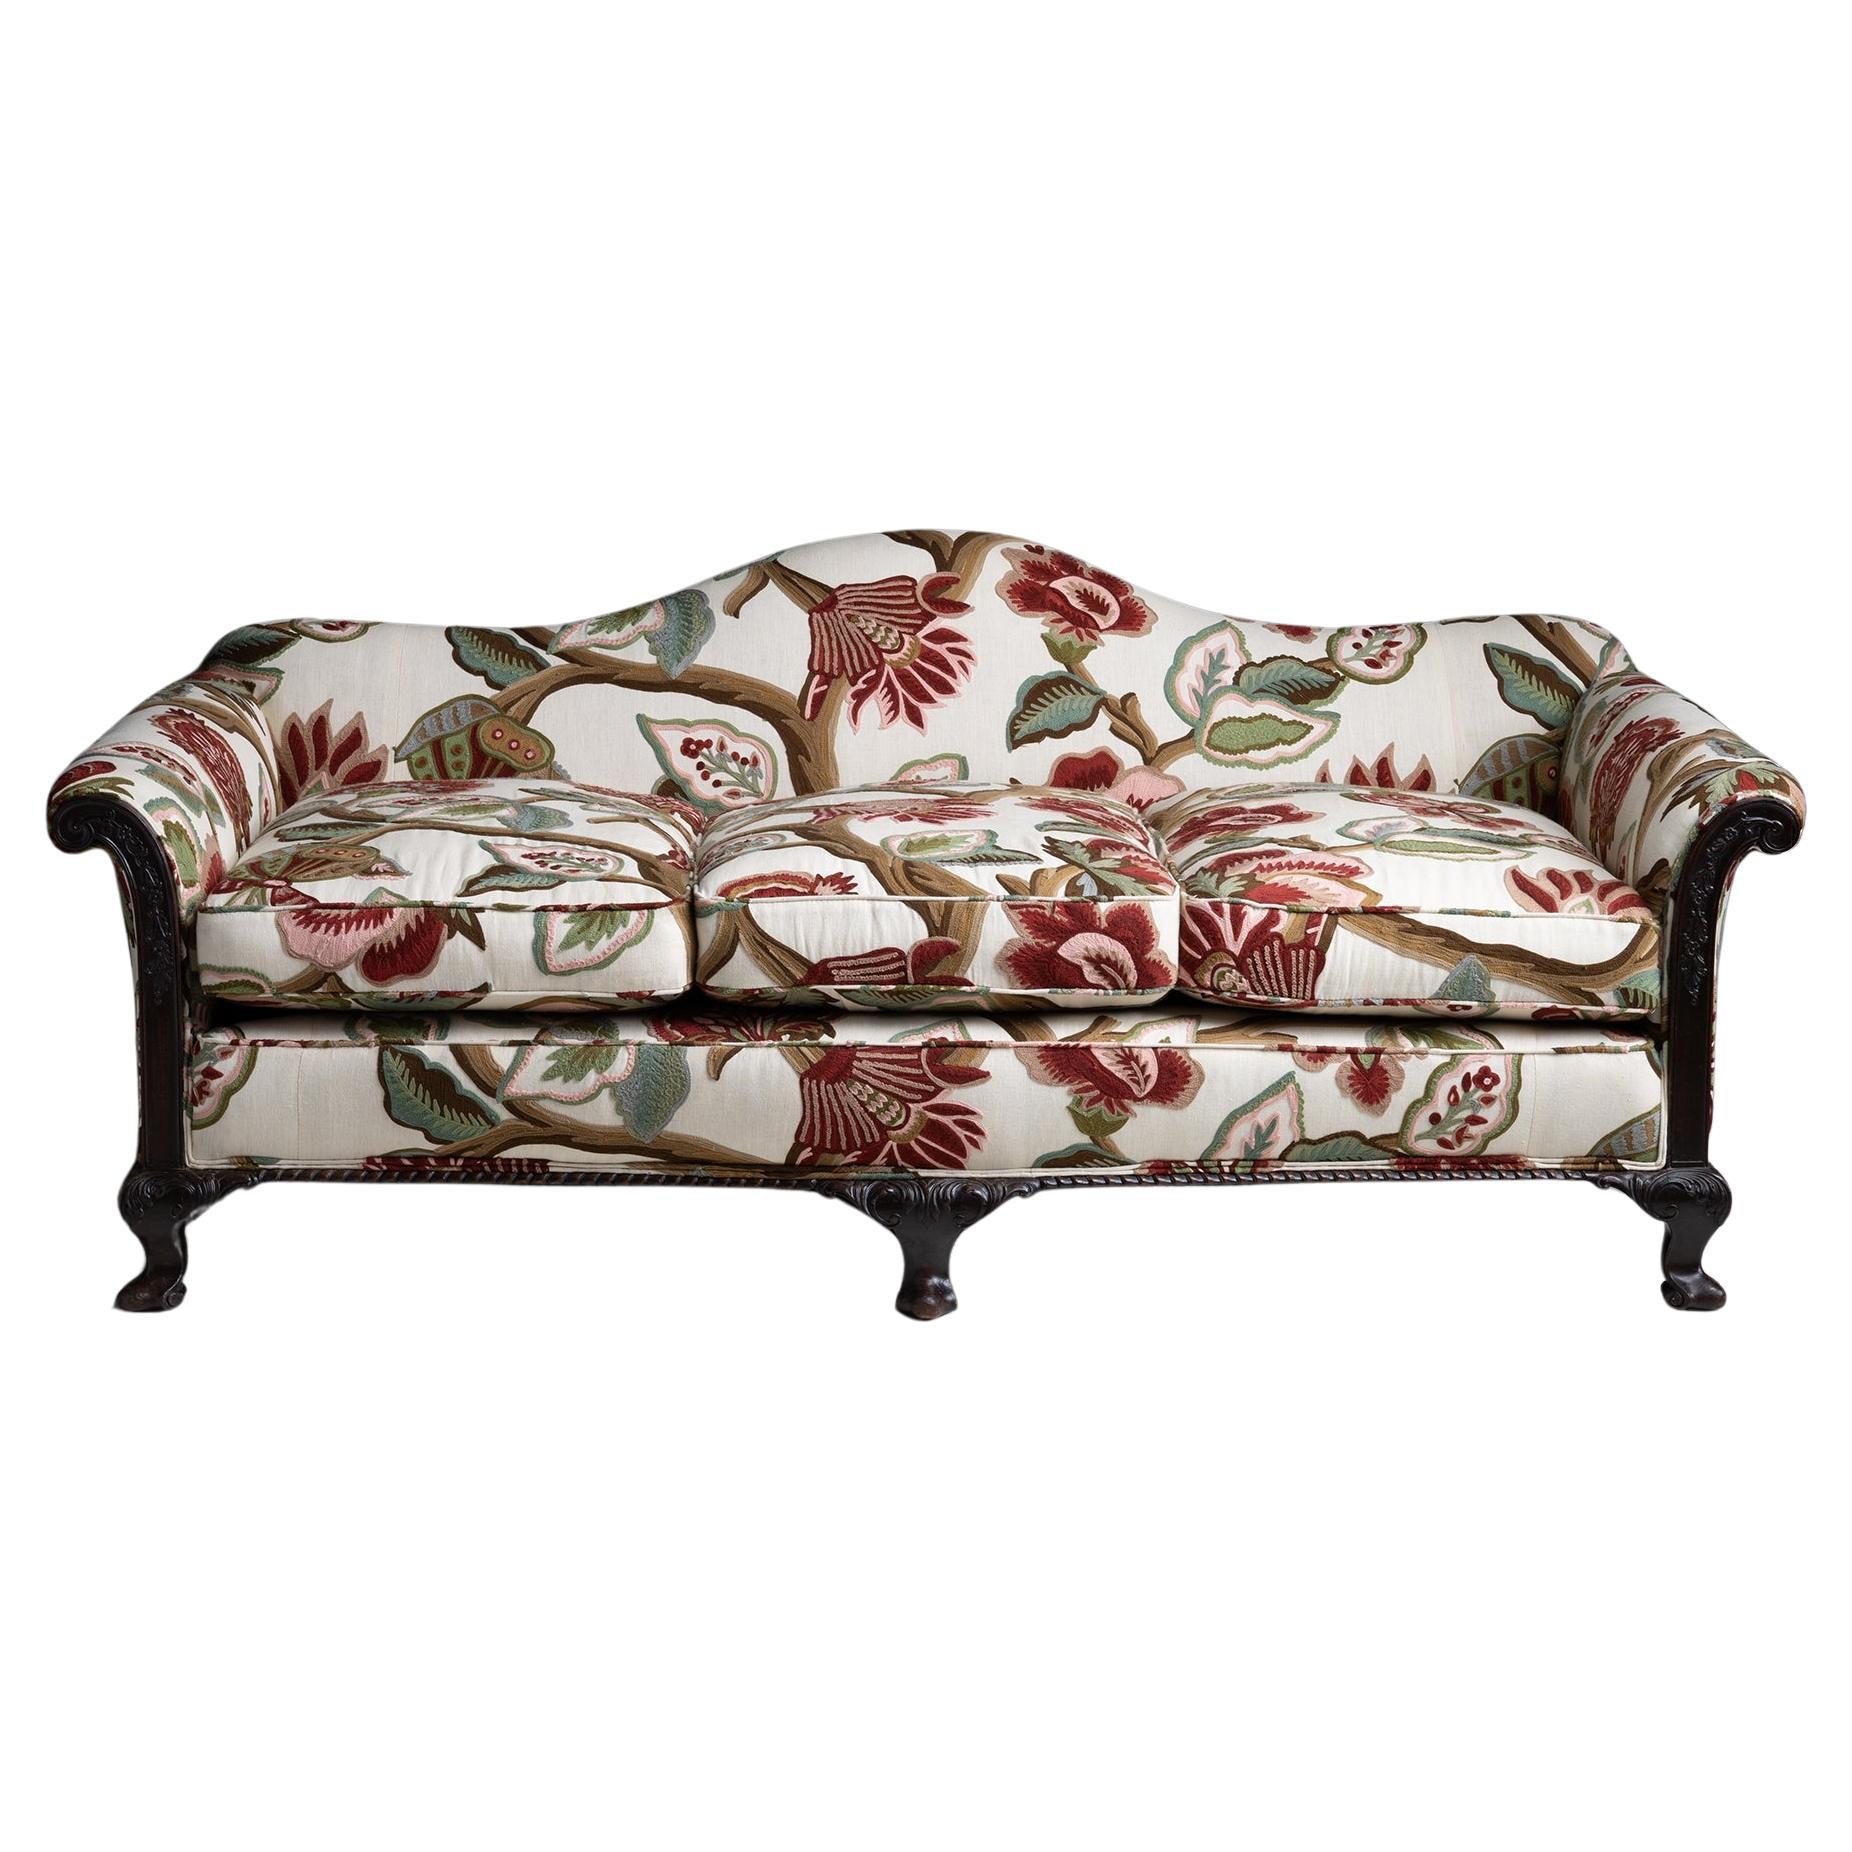 Sofa aus besticktem Leinen von Pierre Frey, England um 1900